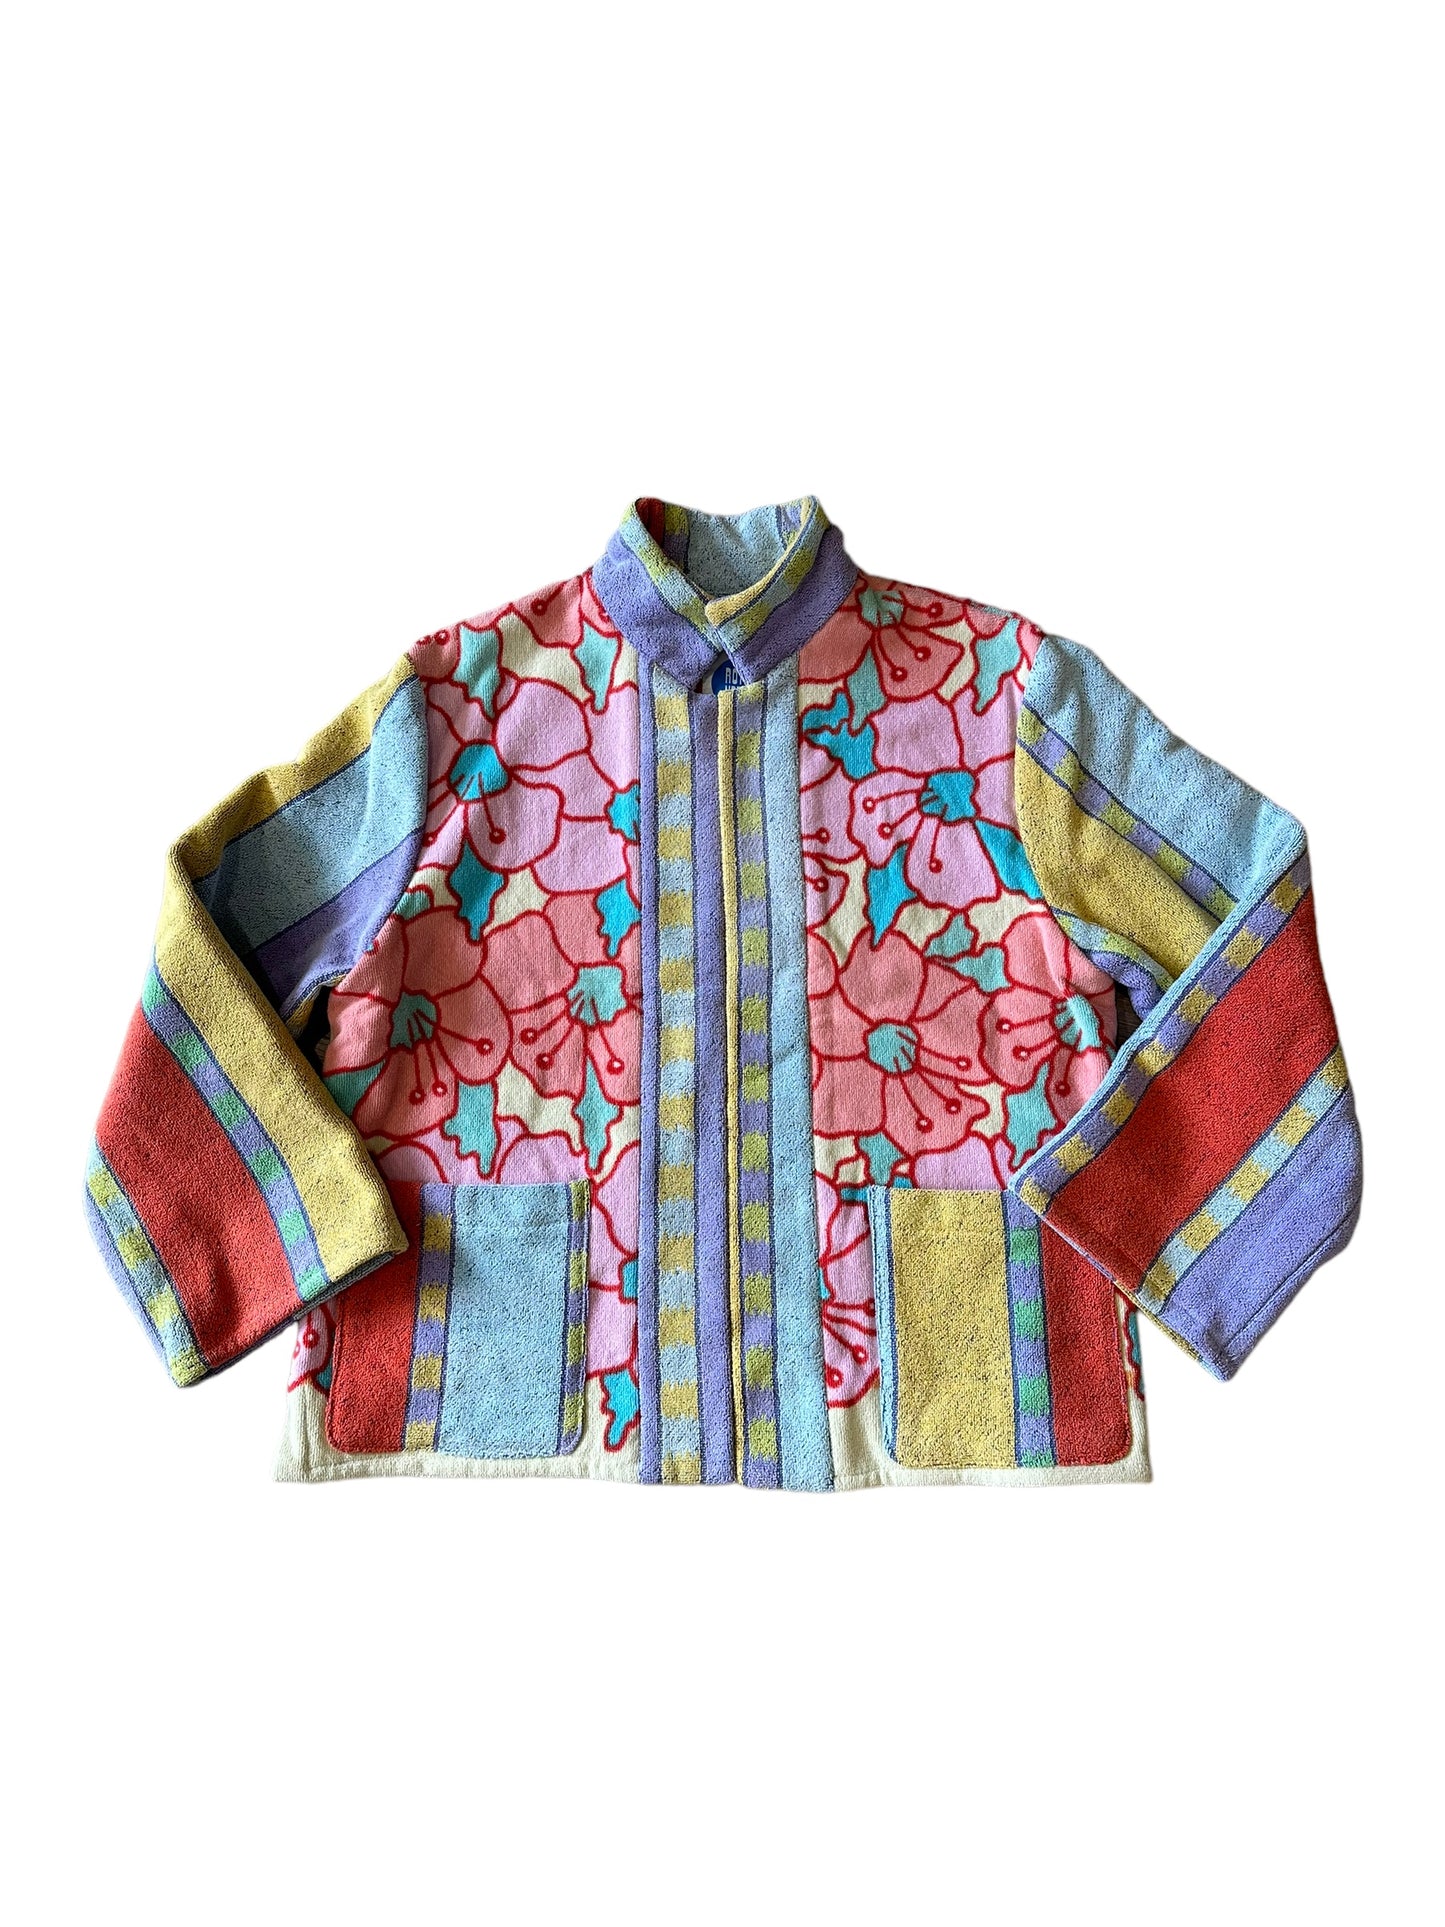 Regazza jacket in Pop Art Poppies